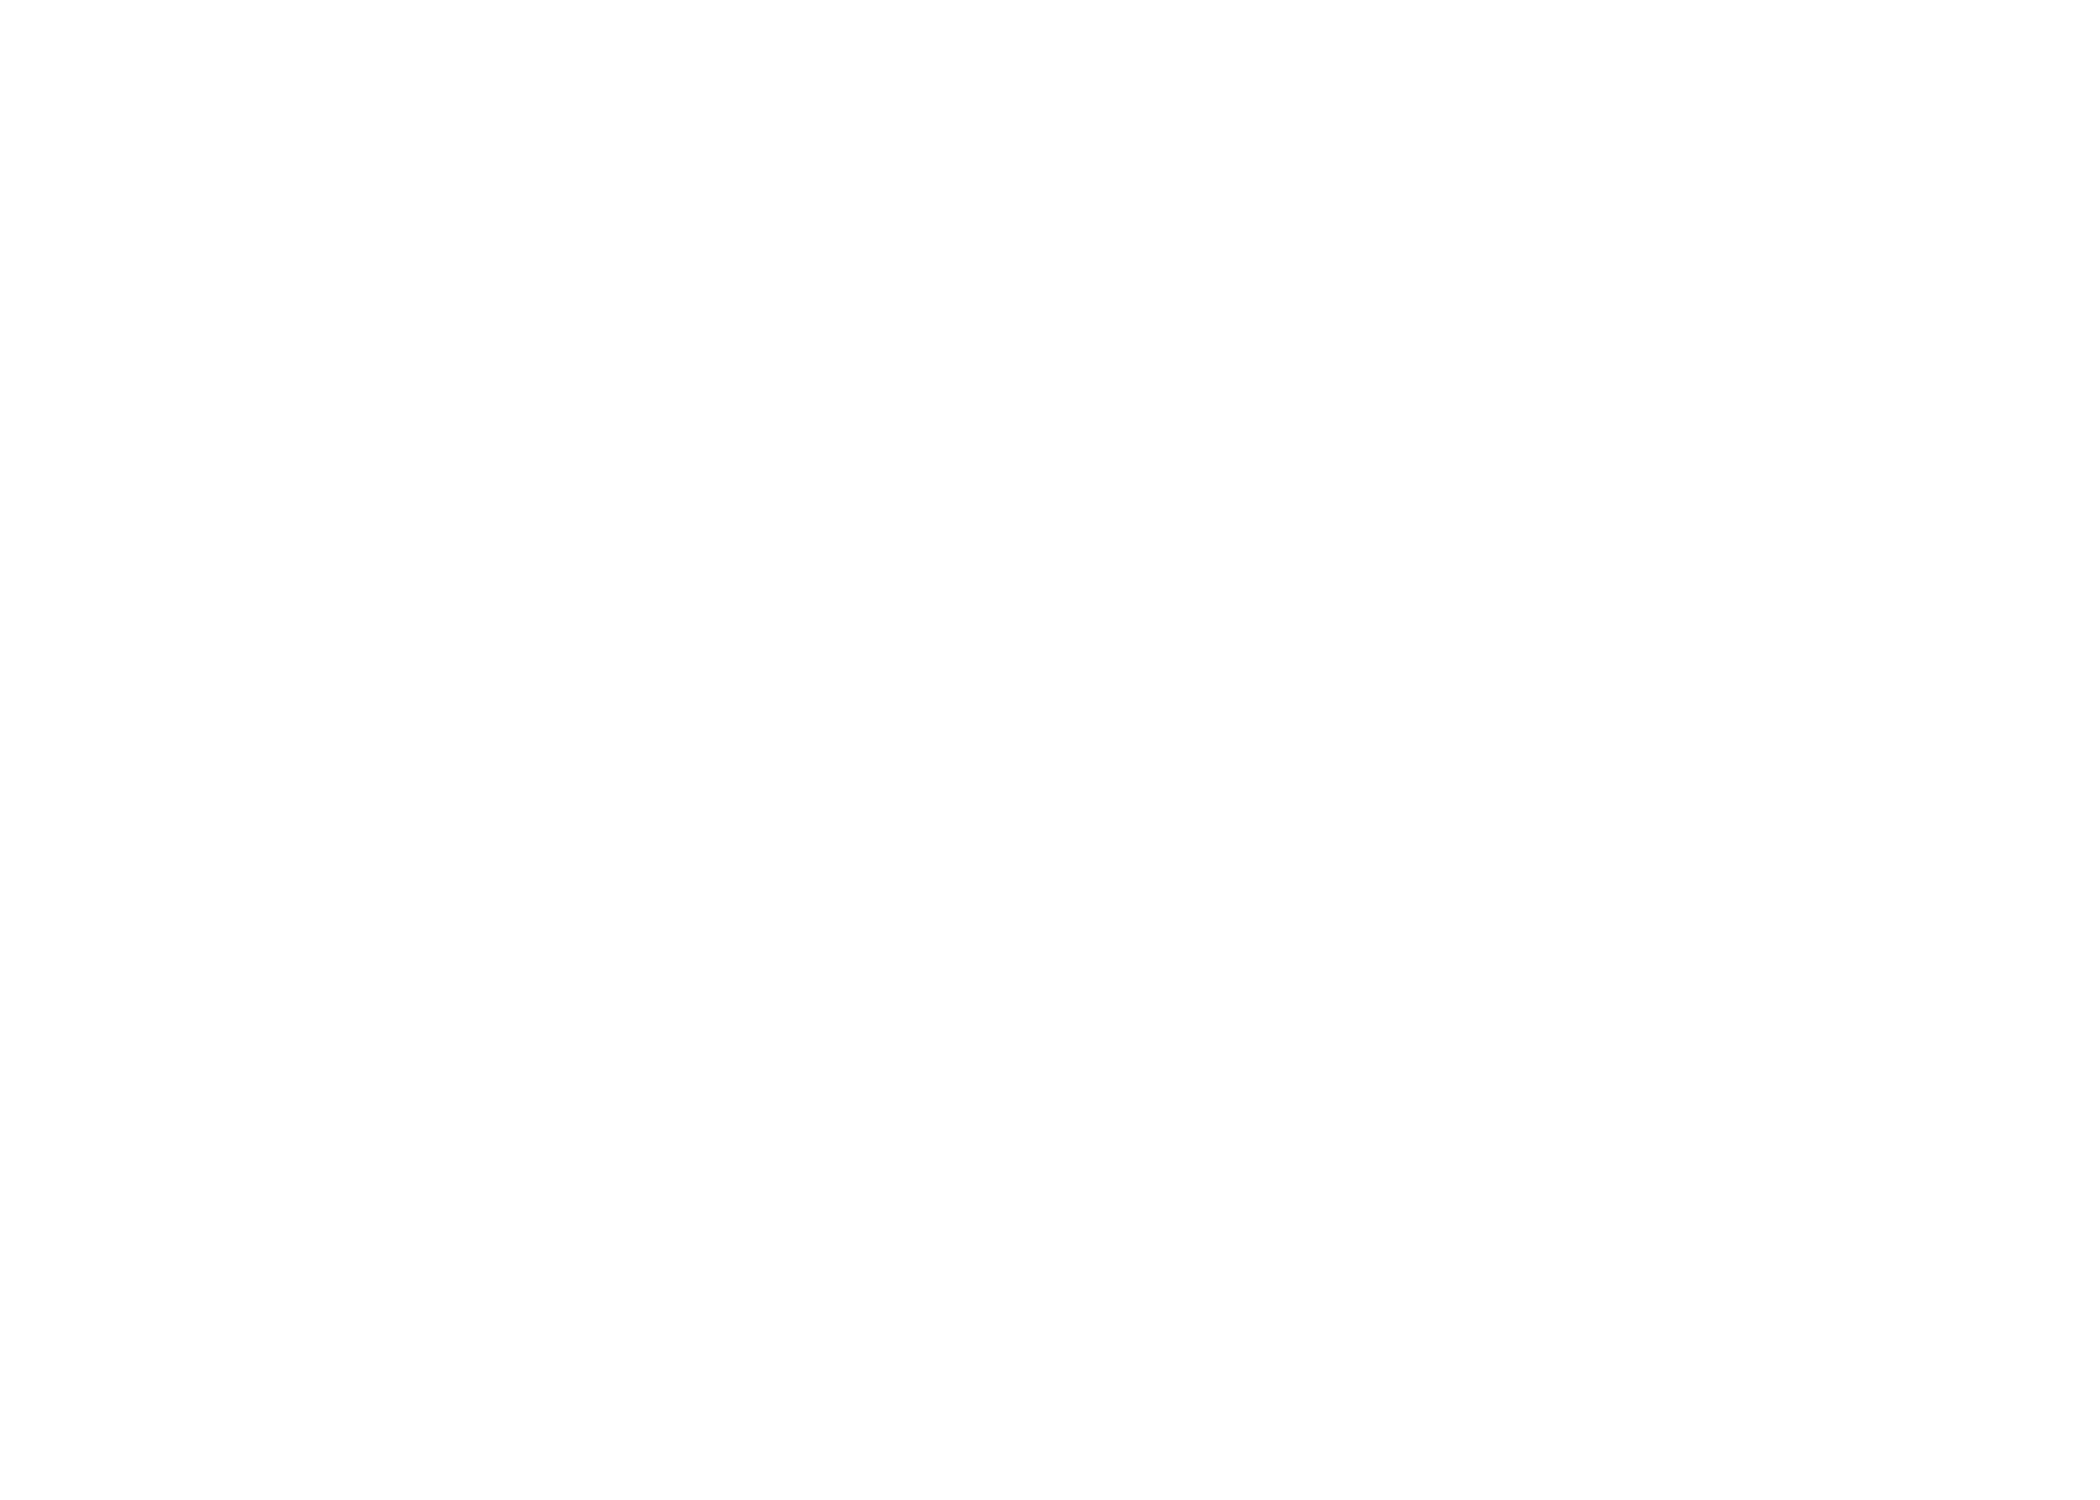 Reading Alloys company logo